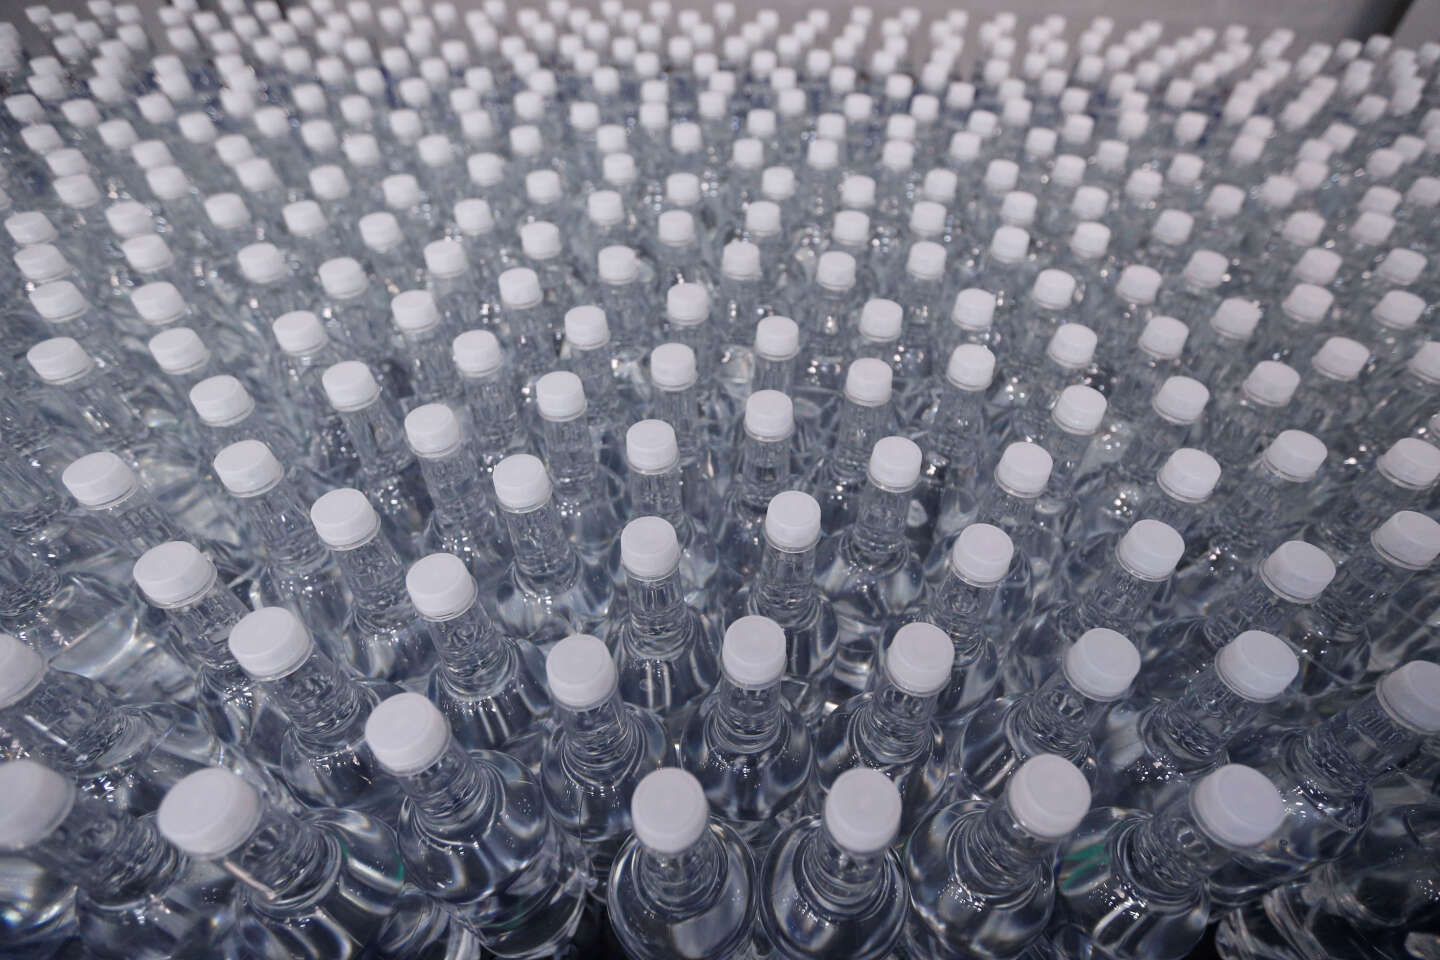 Une nouvelle méthode d’analyse révèle la présence massive de nanoparticules de plastique dans l’eau en bouteille